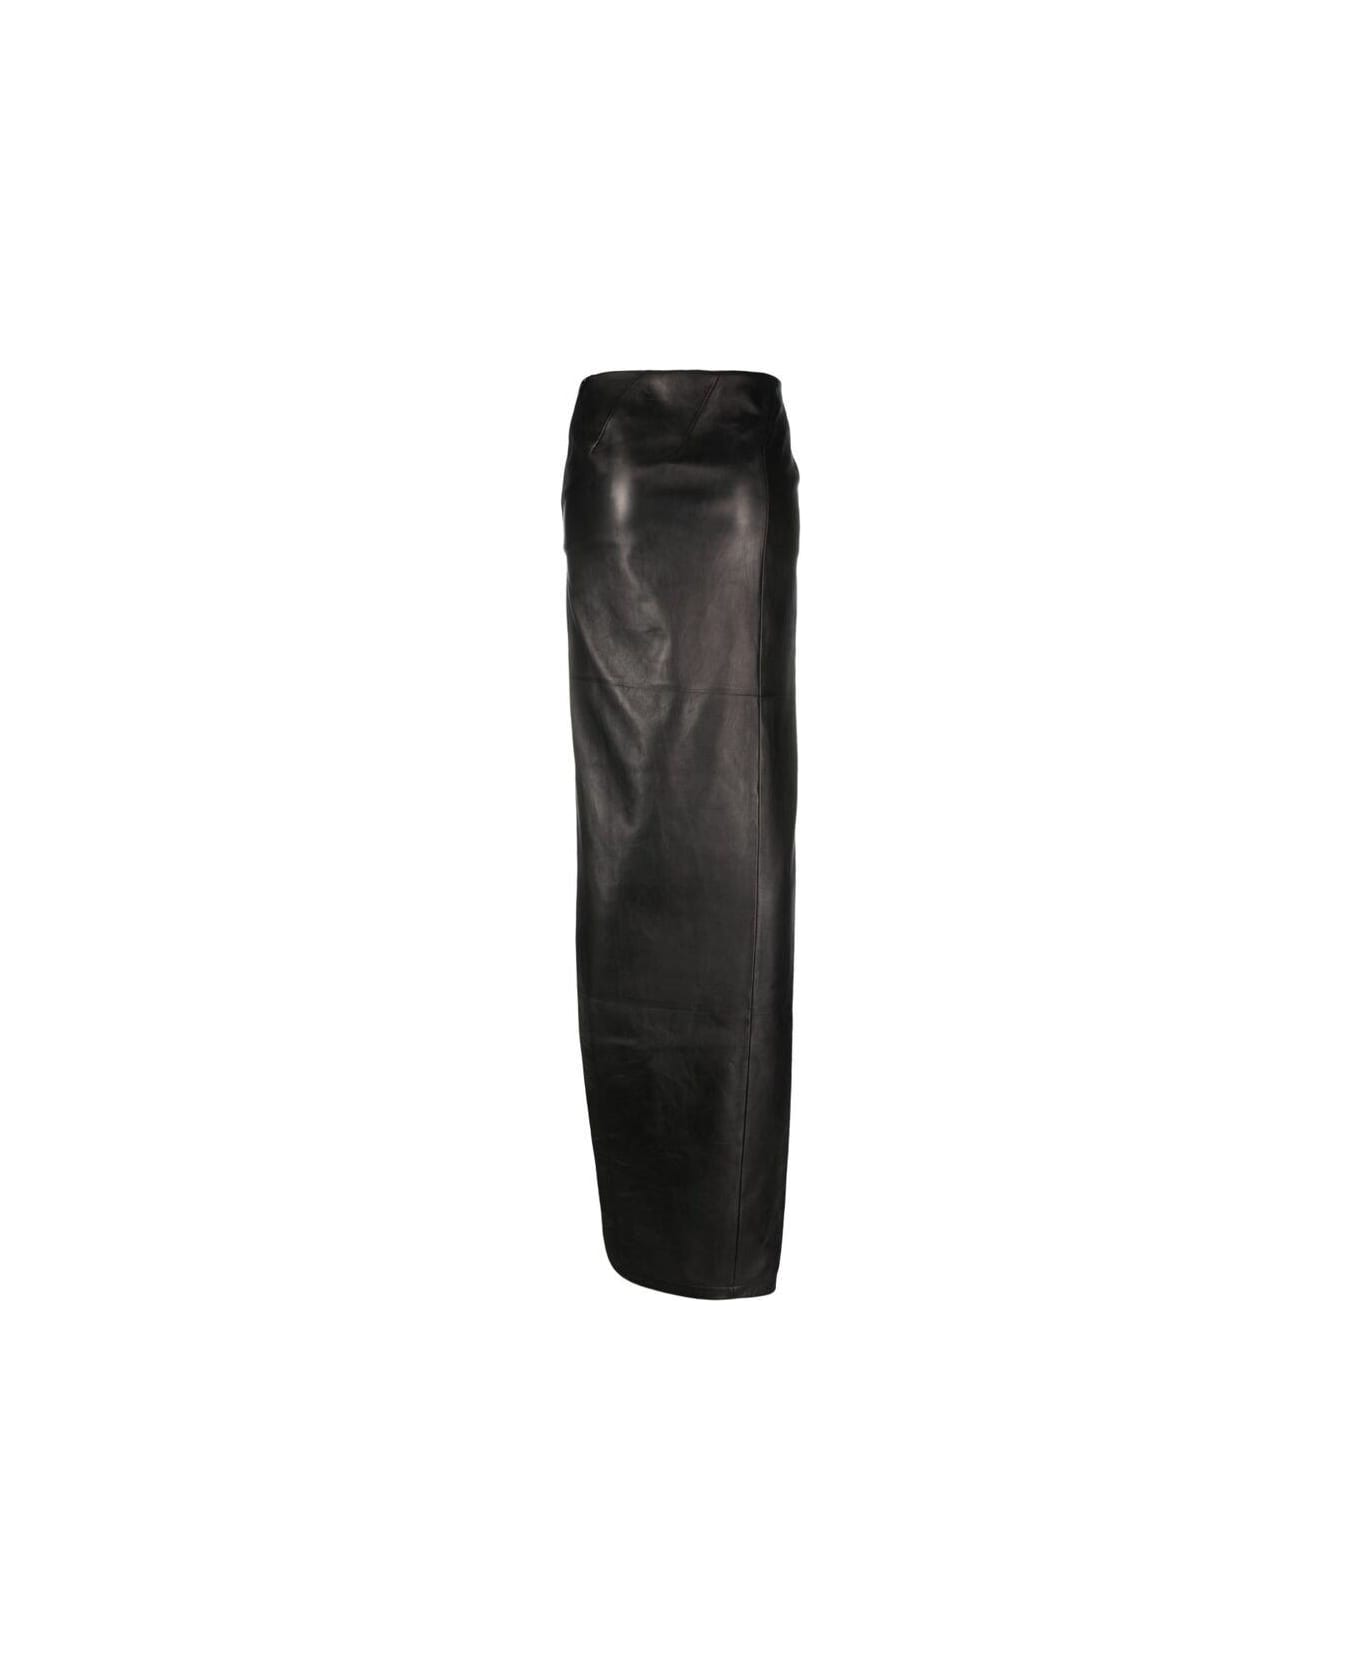 Ann Demeulemeester Side-slit Skirt - BLACK